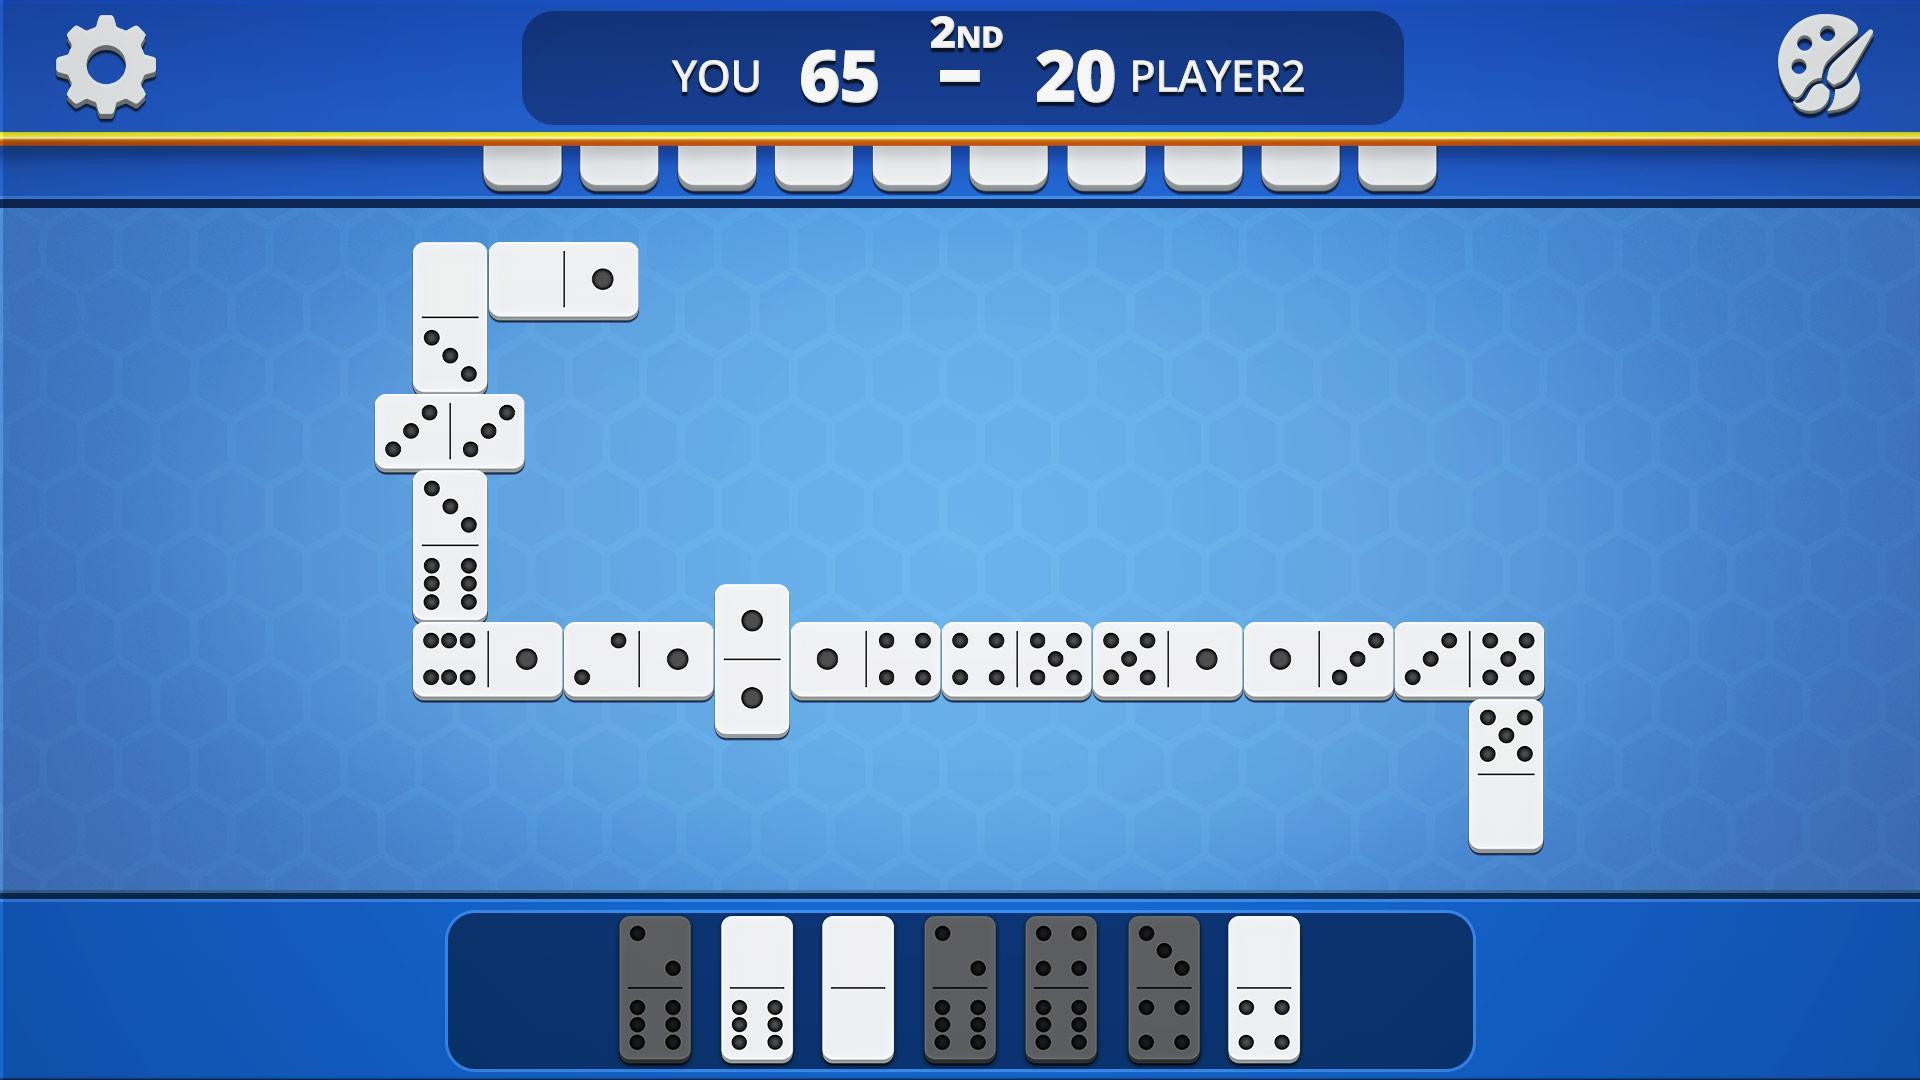 Dominoes Classic Domino Tile Based Game 1.2.5 Screenshot 23